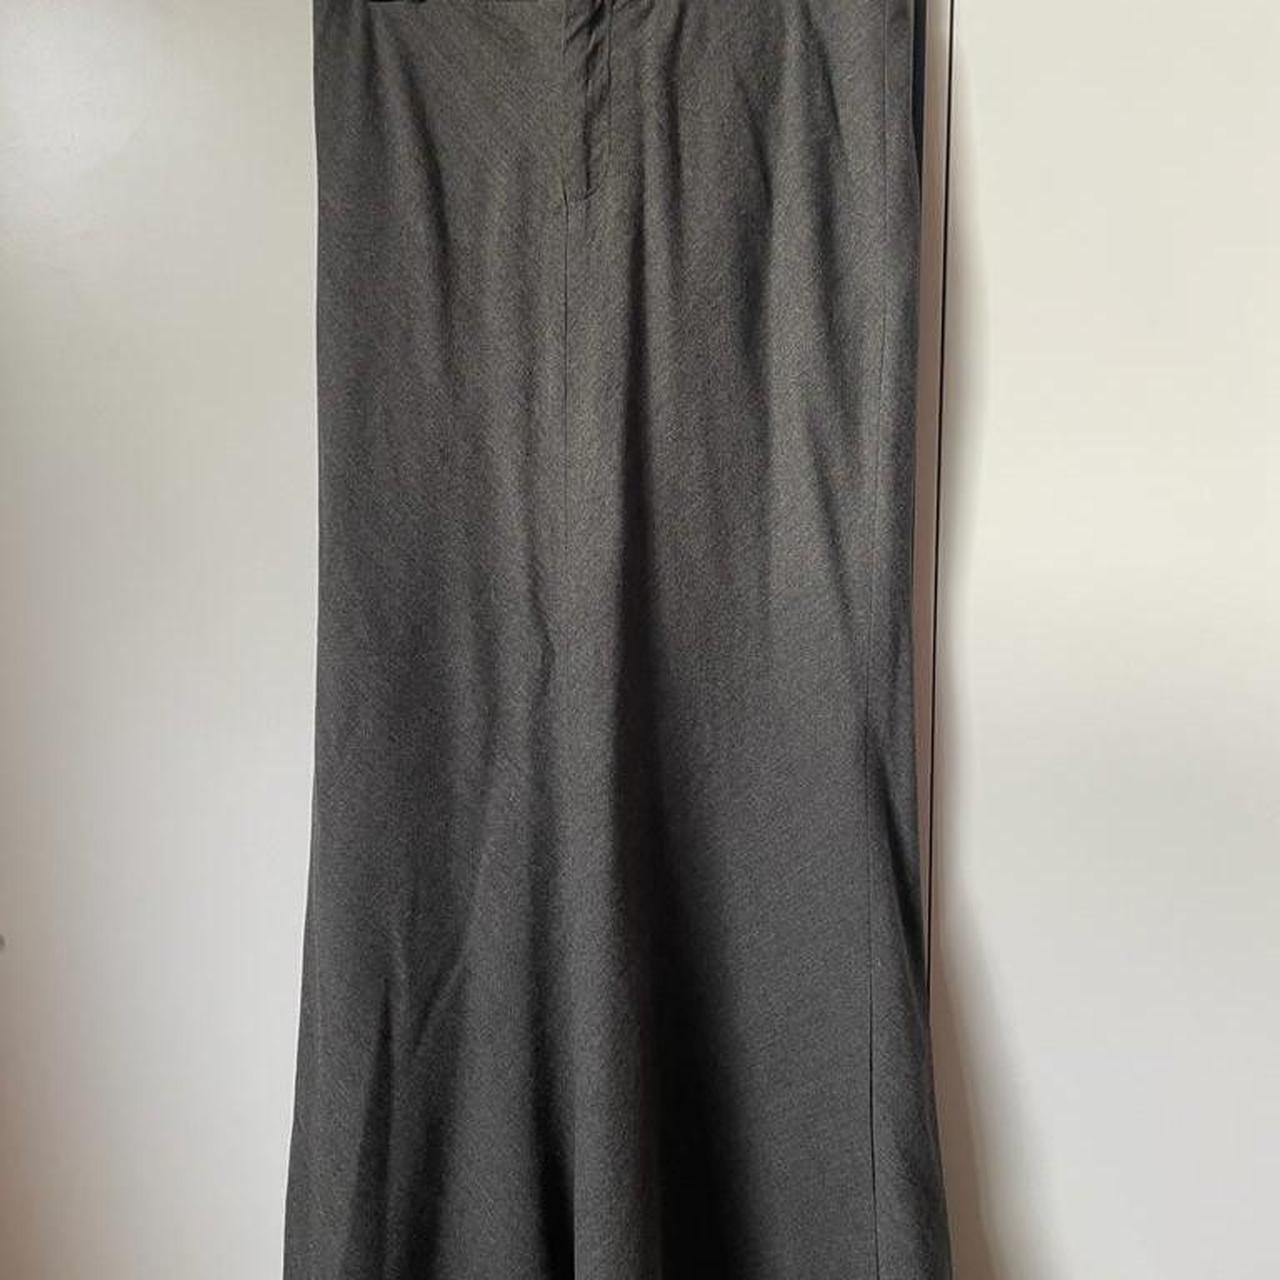 Ralph Lauren size 8 long skirt #ralphlauren #size8... - Depop